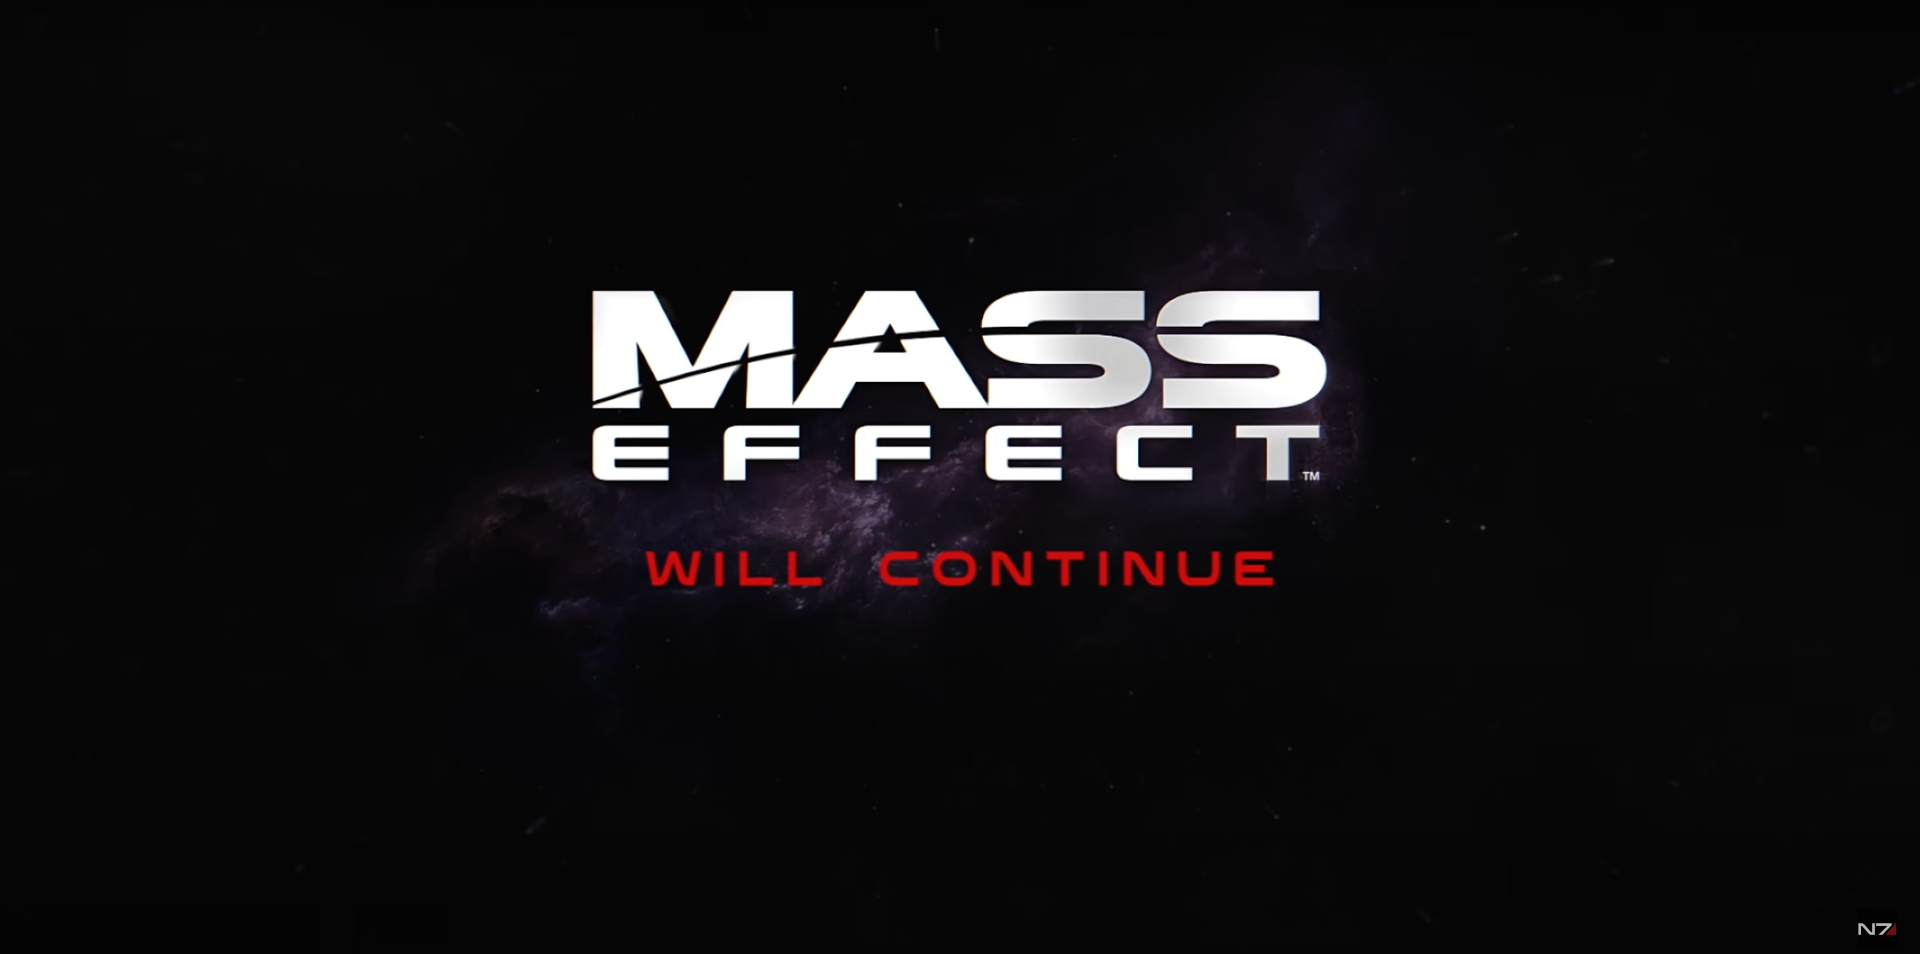 Mass effect 4